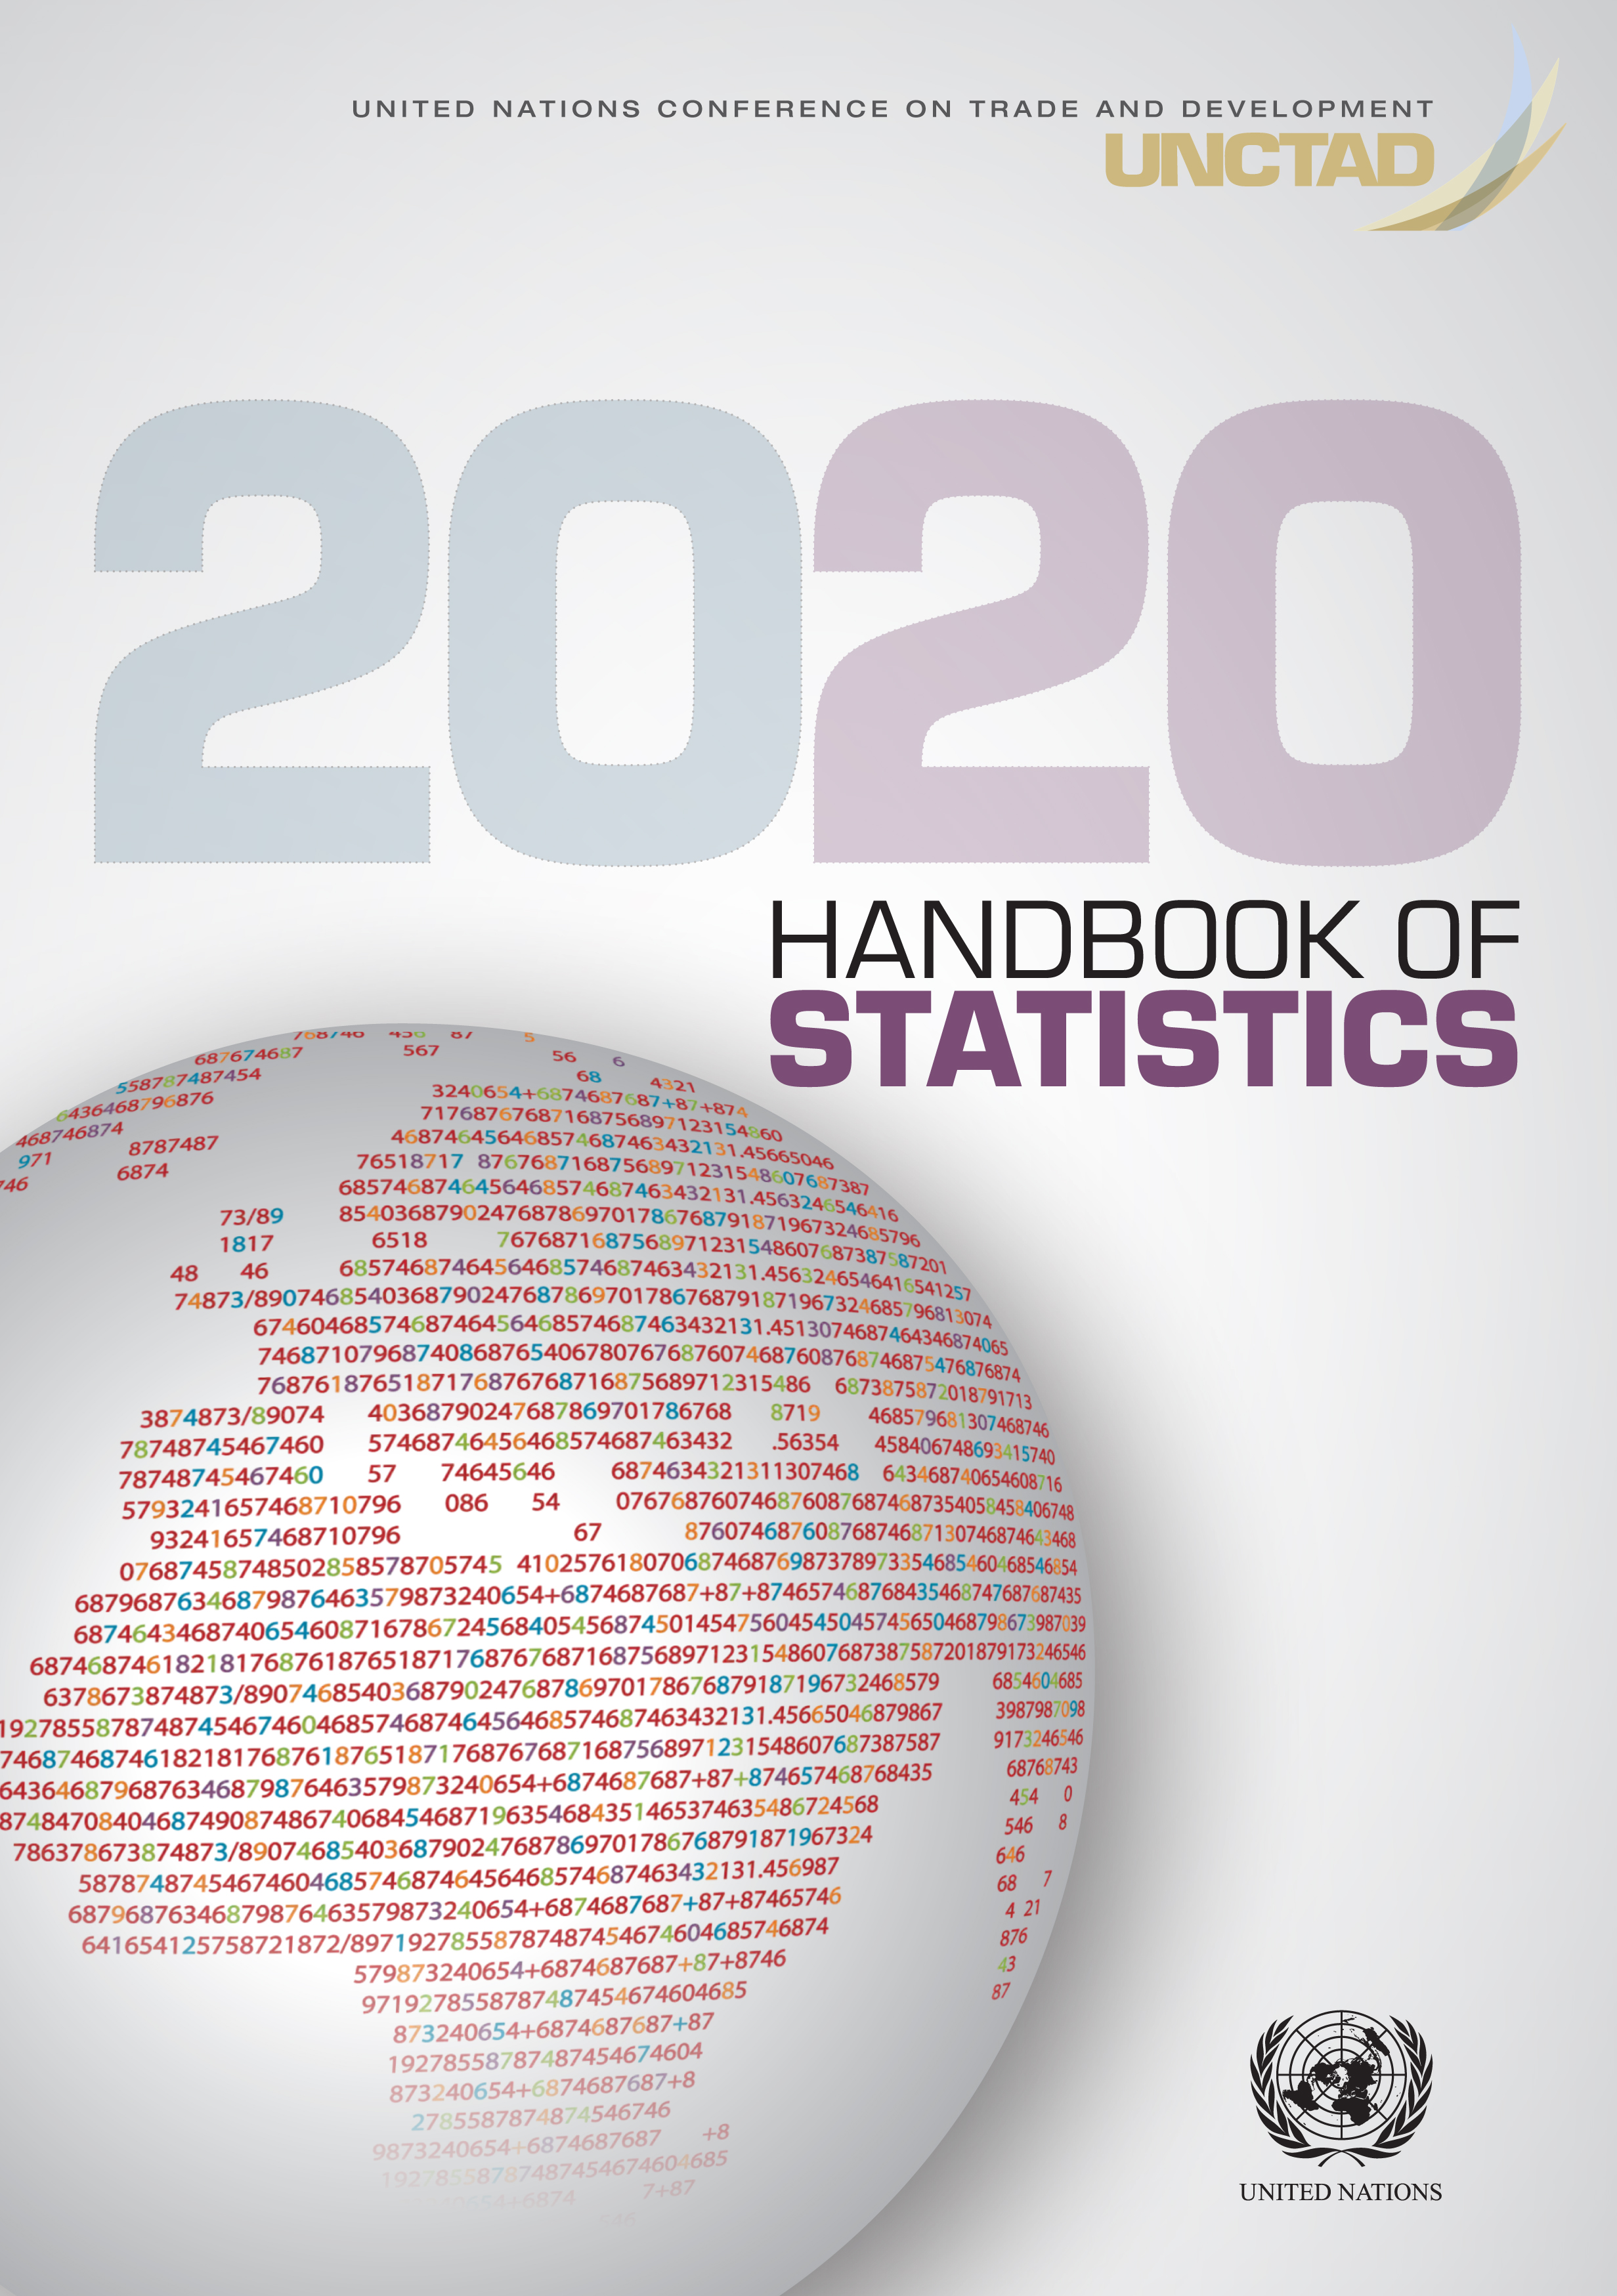 image of UNCTAD Handbook of Statistics 2020